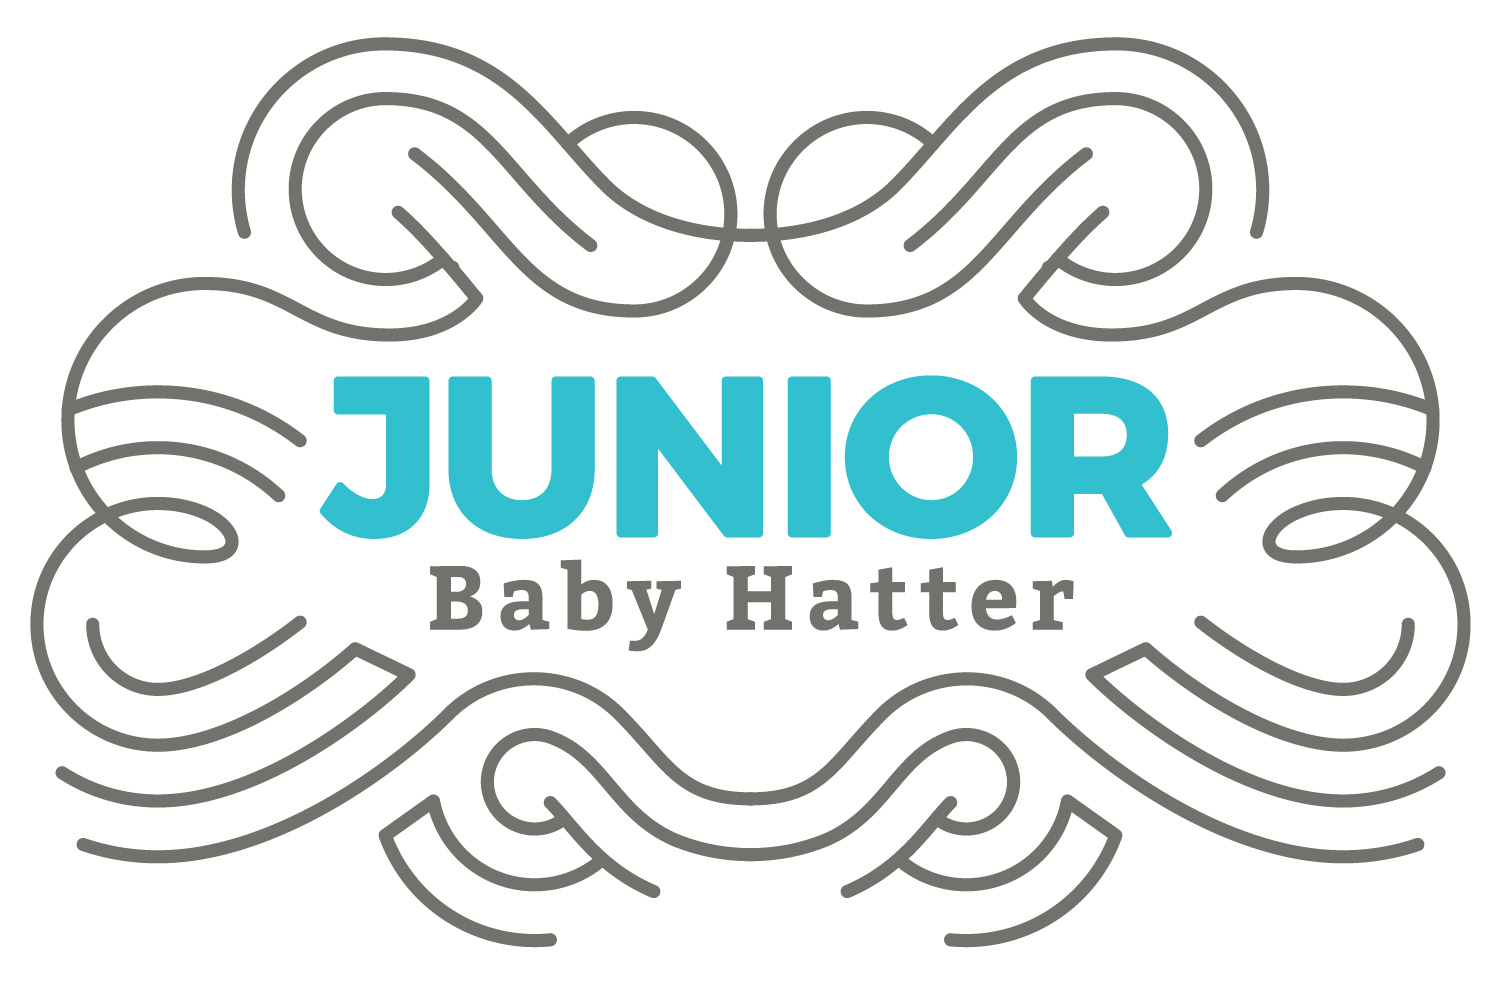 Junior Baby Hatter - Branding 1050